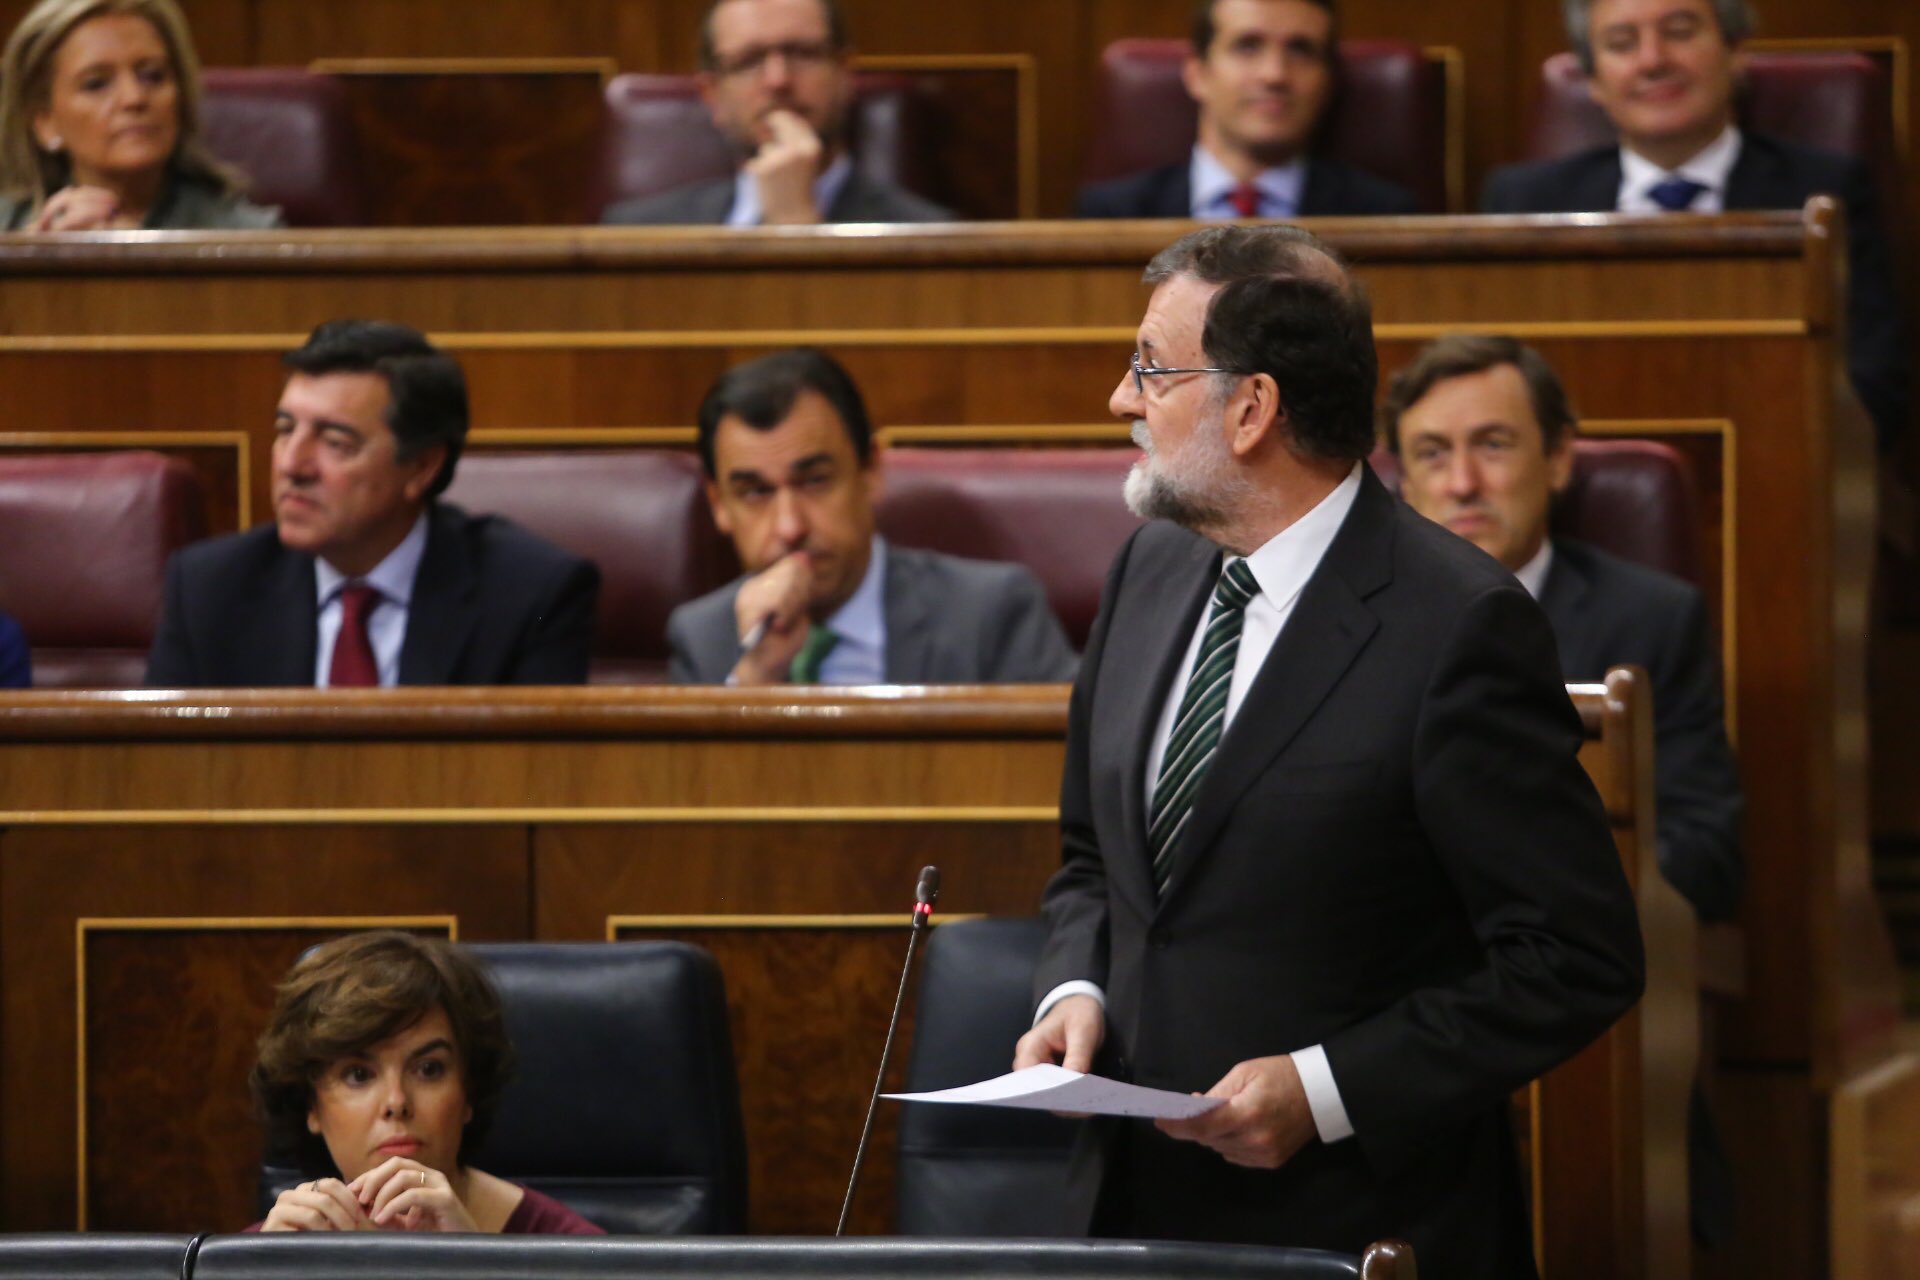 Rajoy lanzó un mensaje a Puigdemont en la sesión de control al Ejecutivo en el Congreso. TWITTER